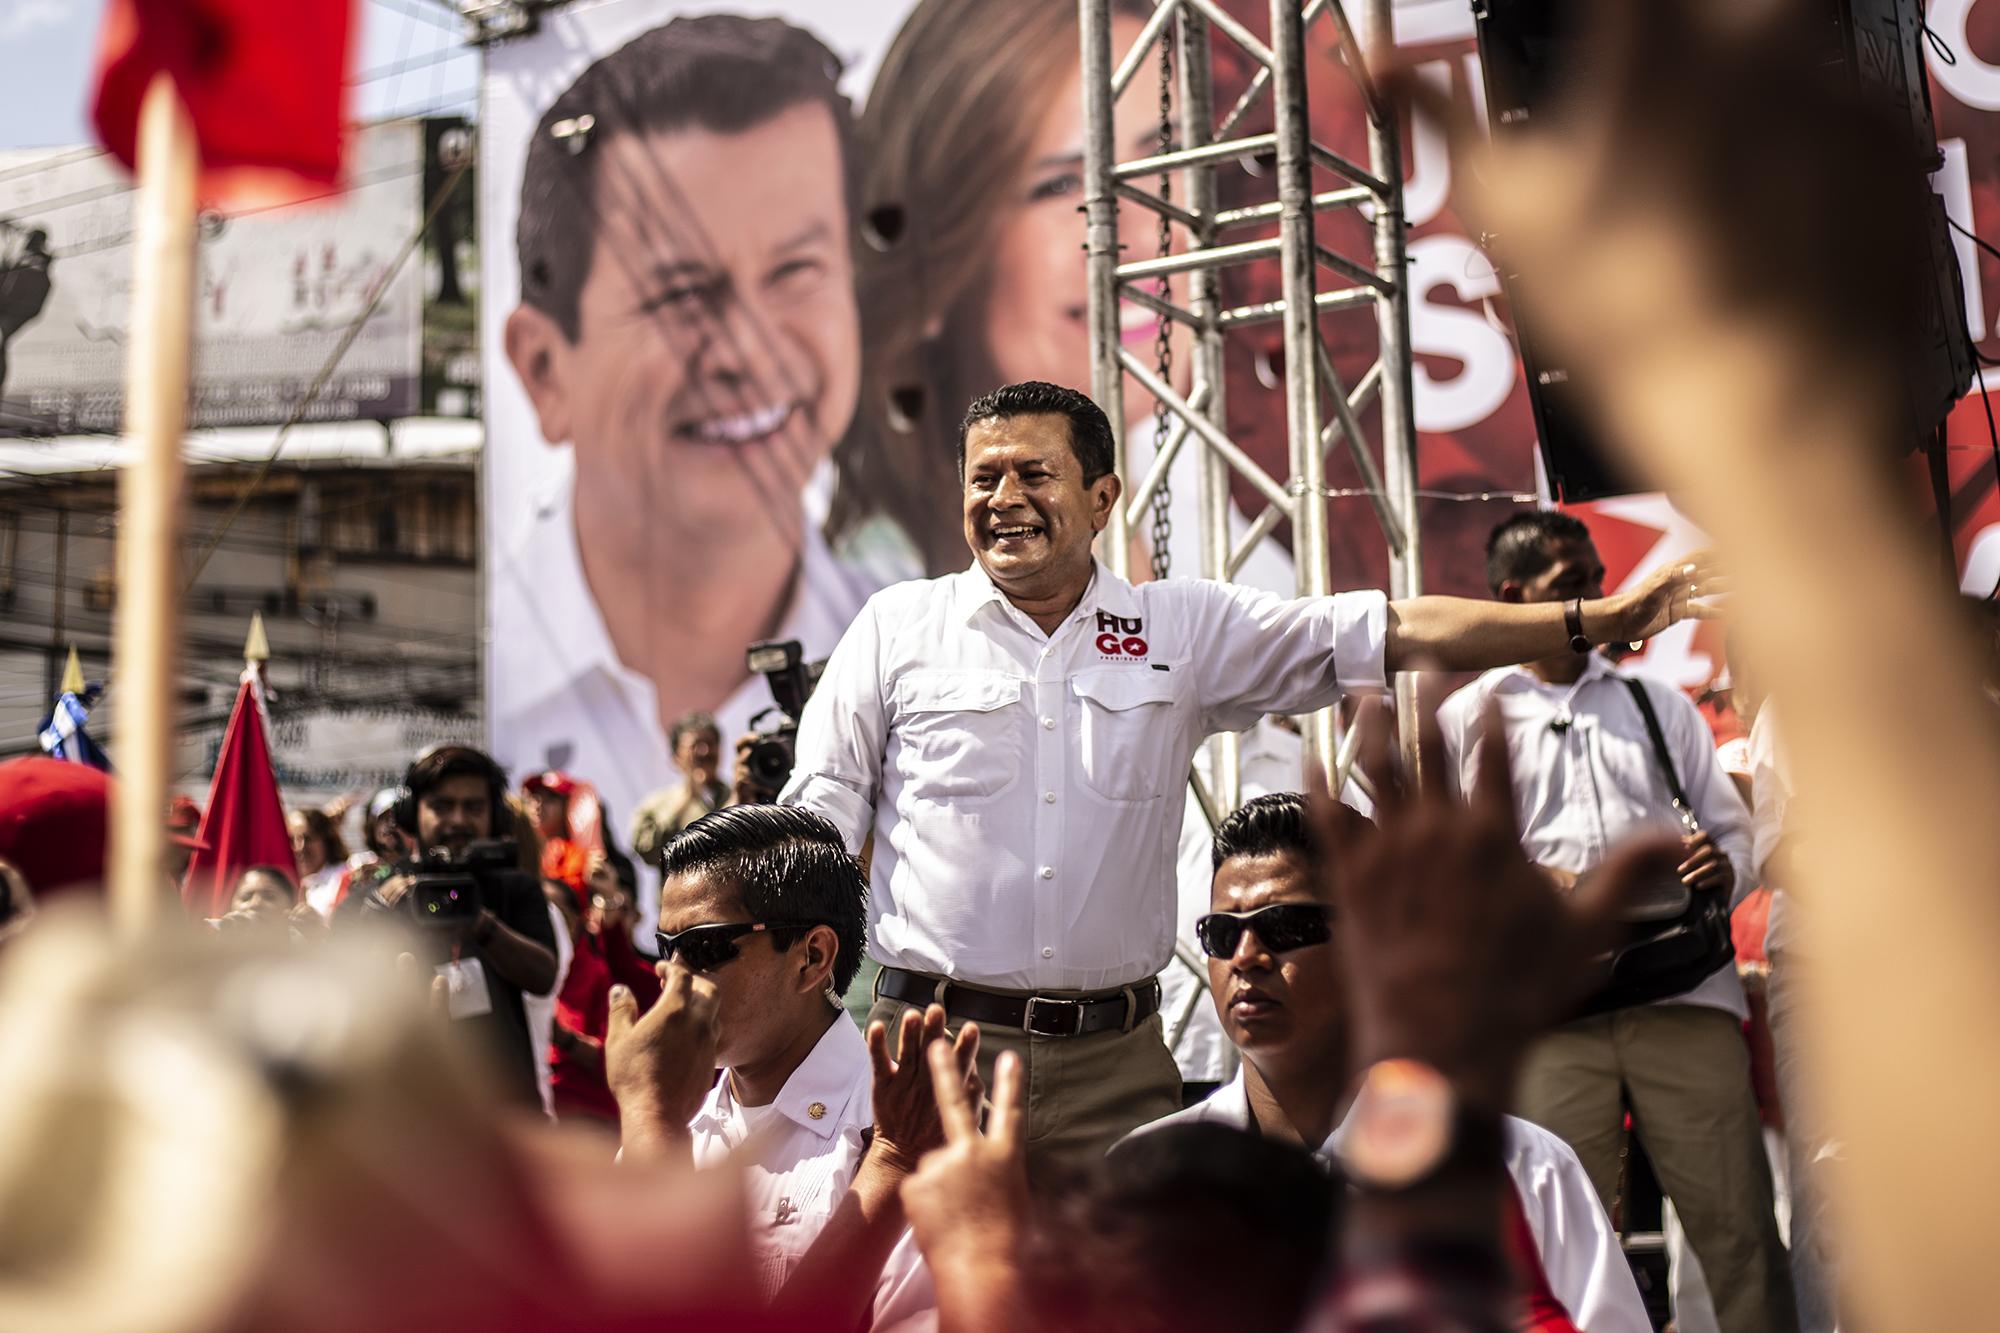 El FMLN celebró hoy el cierre de campaña. Miles de simpatizantes del partido de izquierda se hicieron presentes a la alameda Juan Pablo II de San Salvador para acompañar a su candidato presidencial, Hugo Martínez. Foto Carlos Barrera (El Faro).